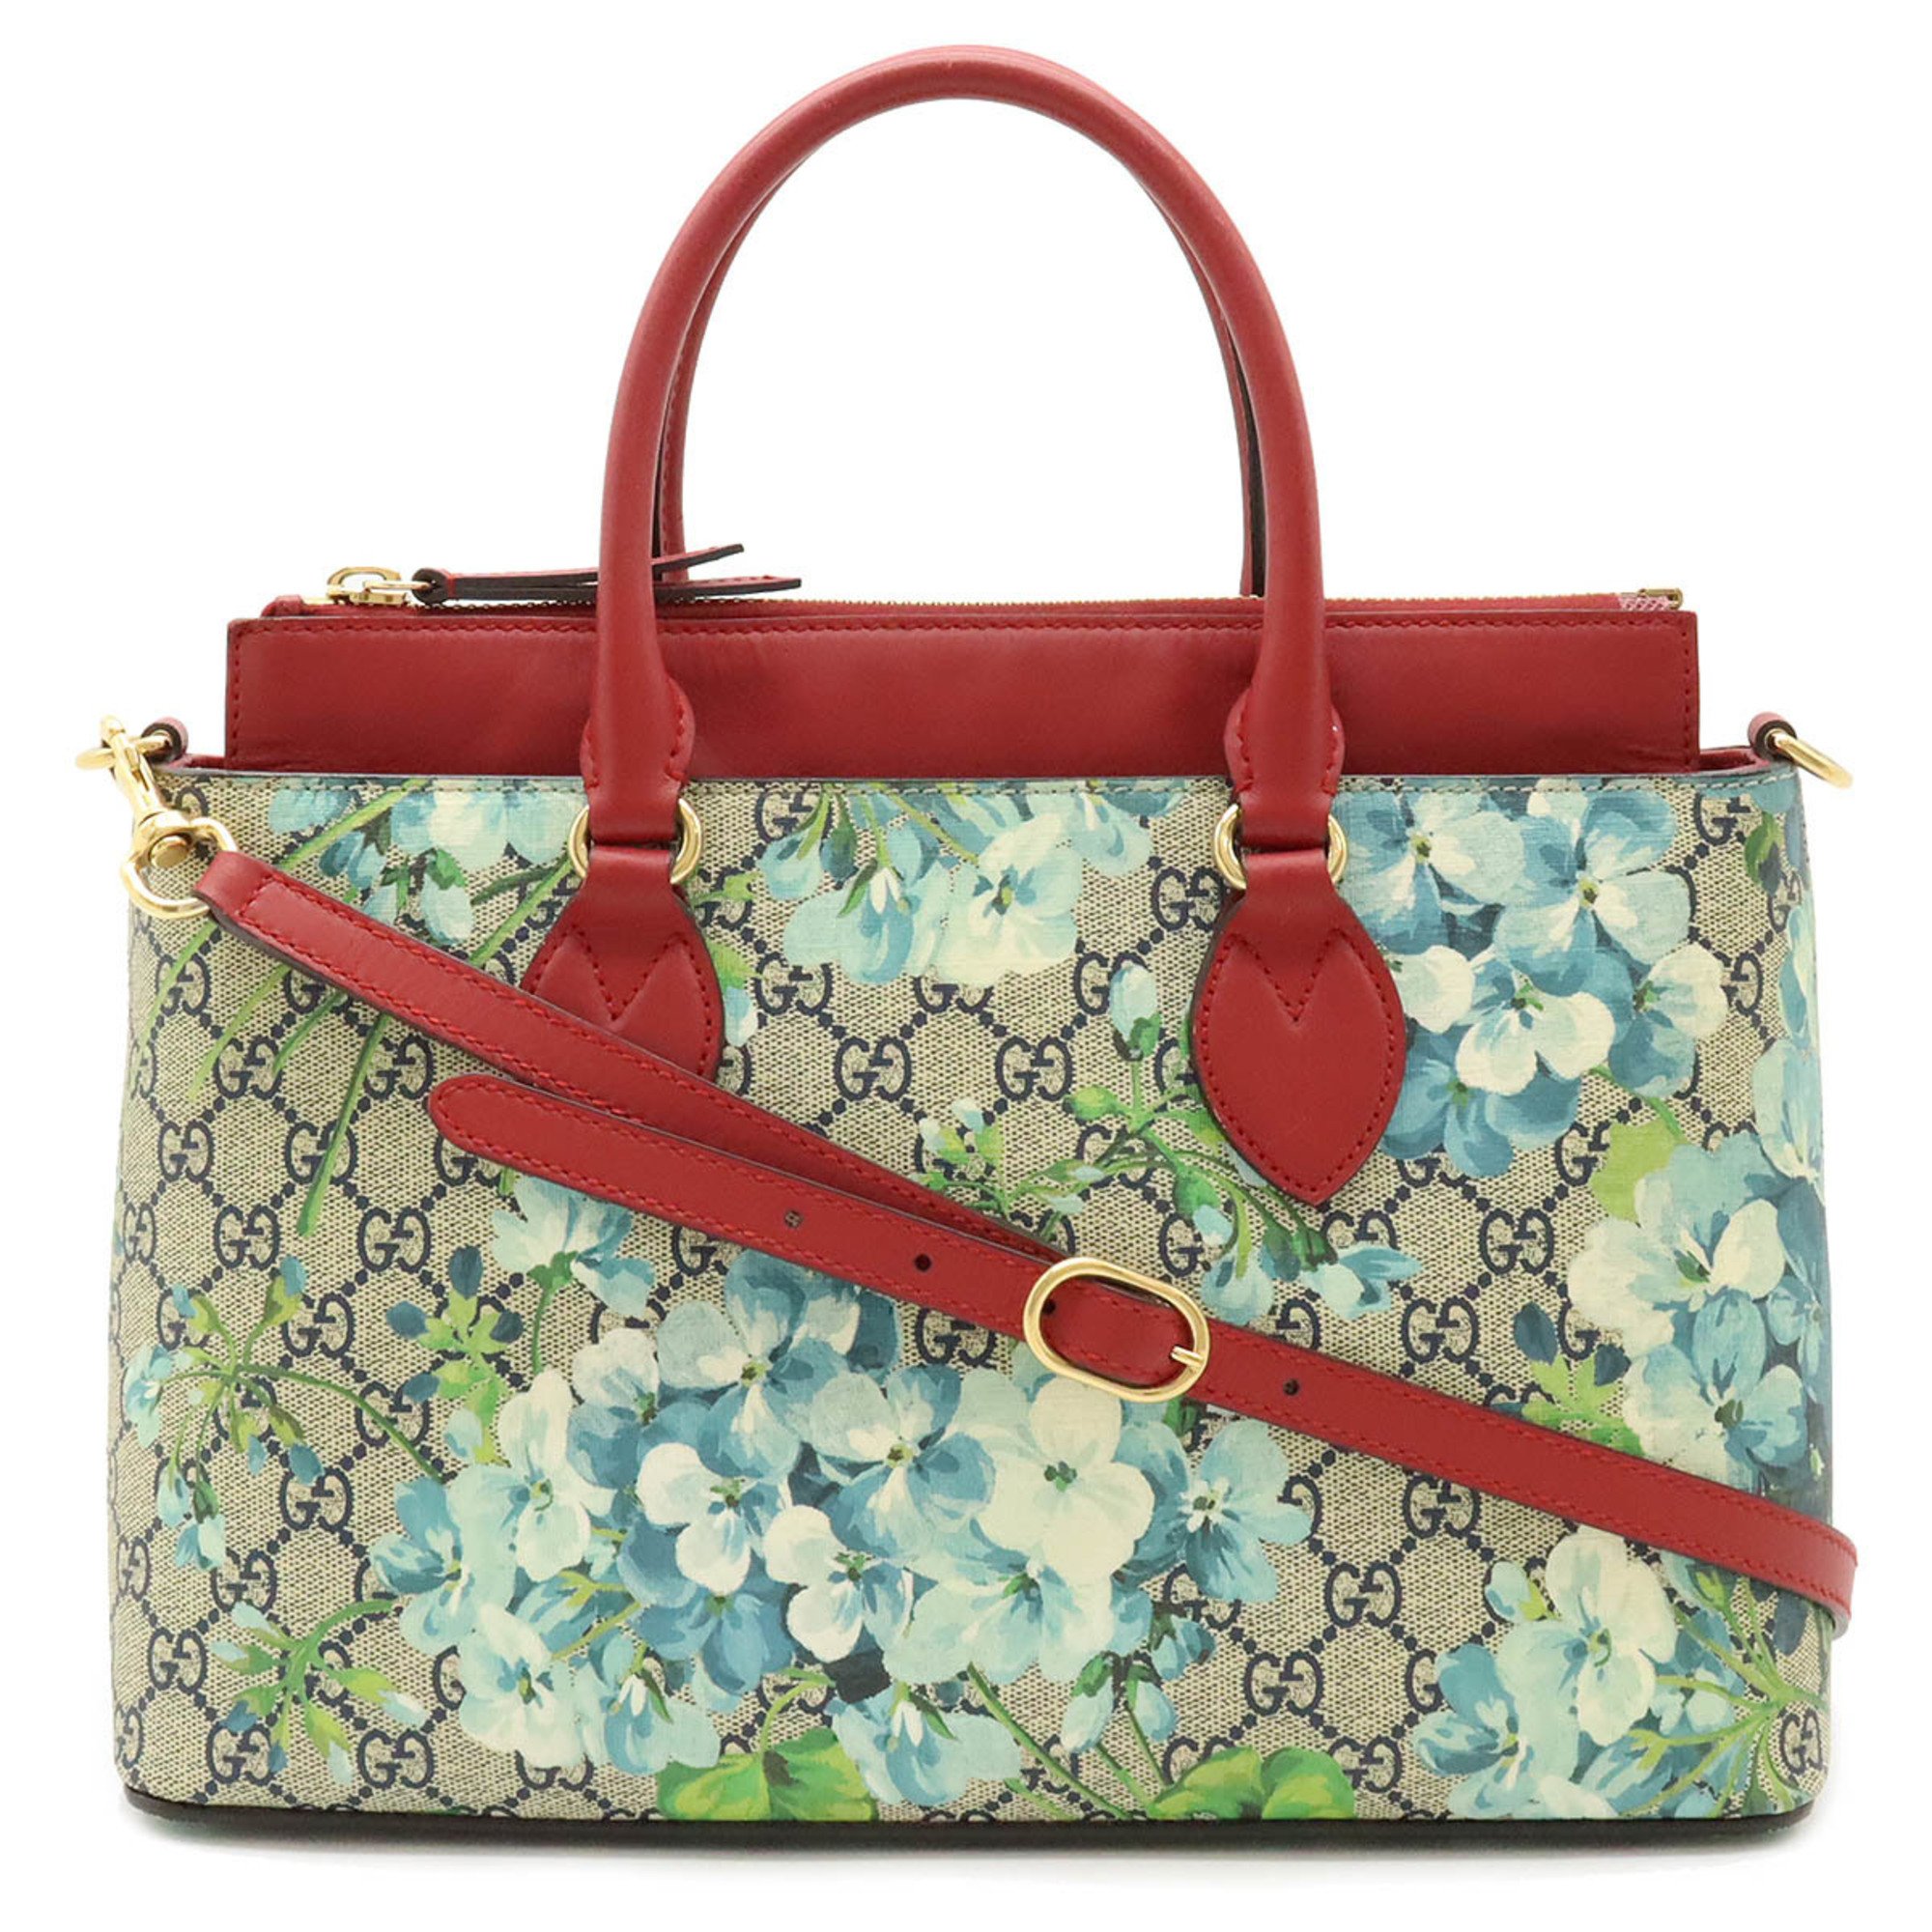 GUCCI GG Blooms handbag shoulder bag PVC leather beige blue multi red 546316